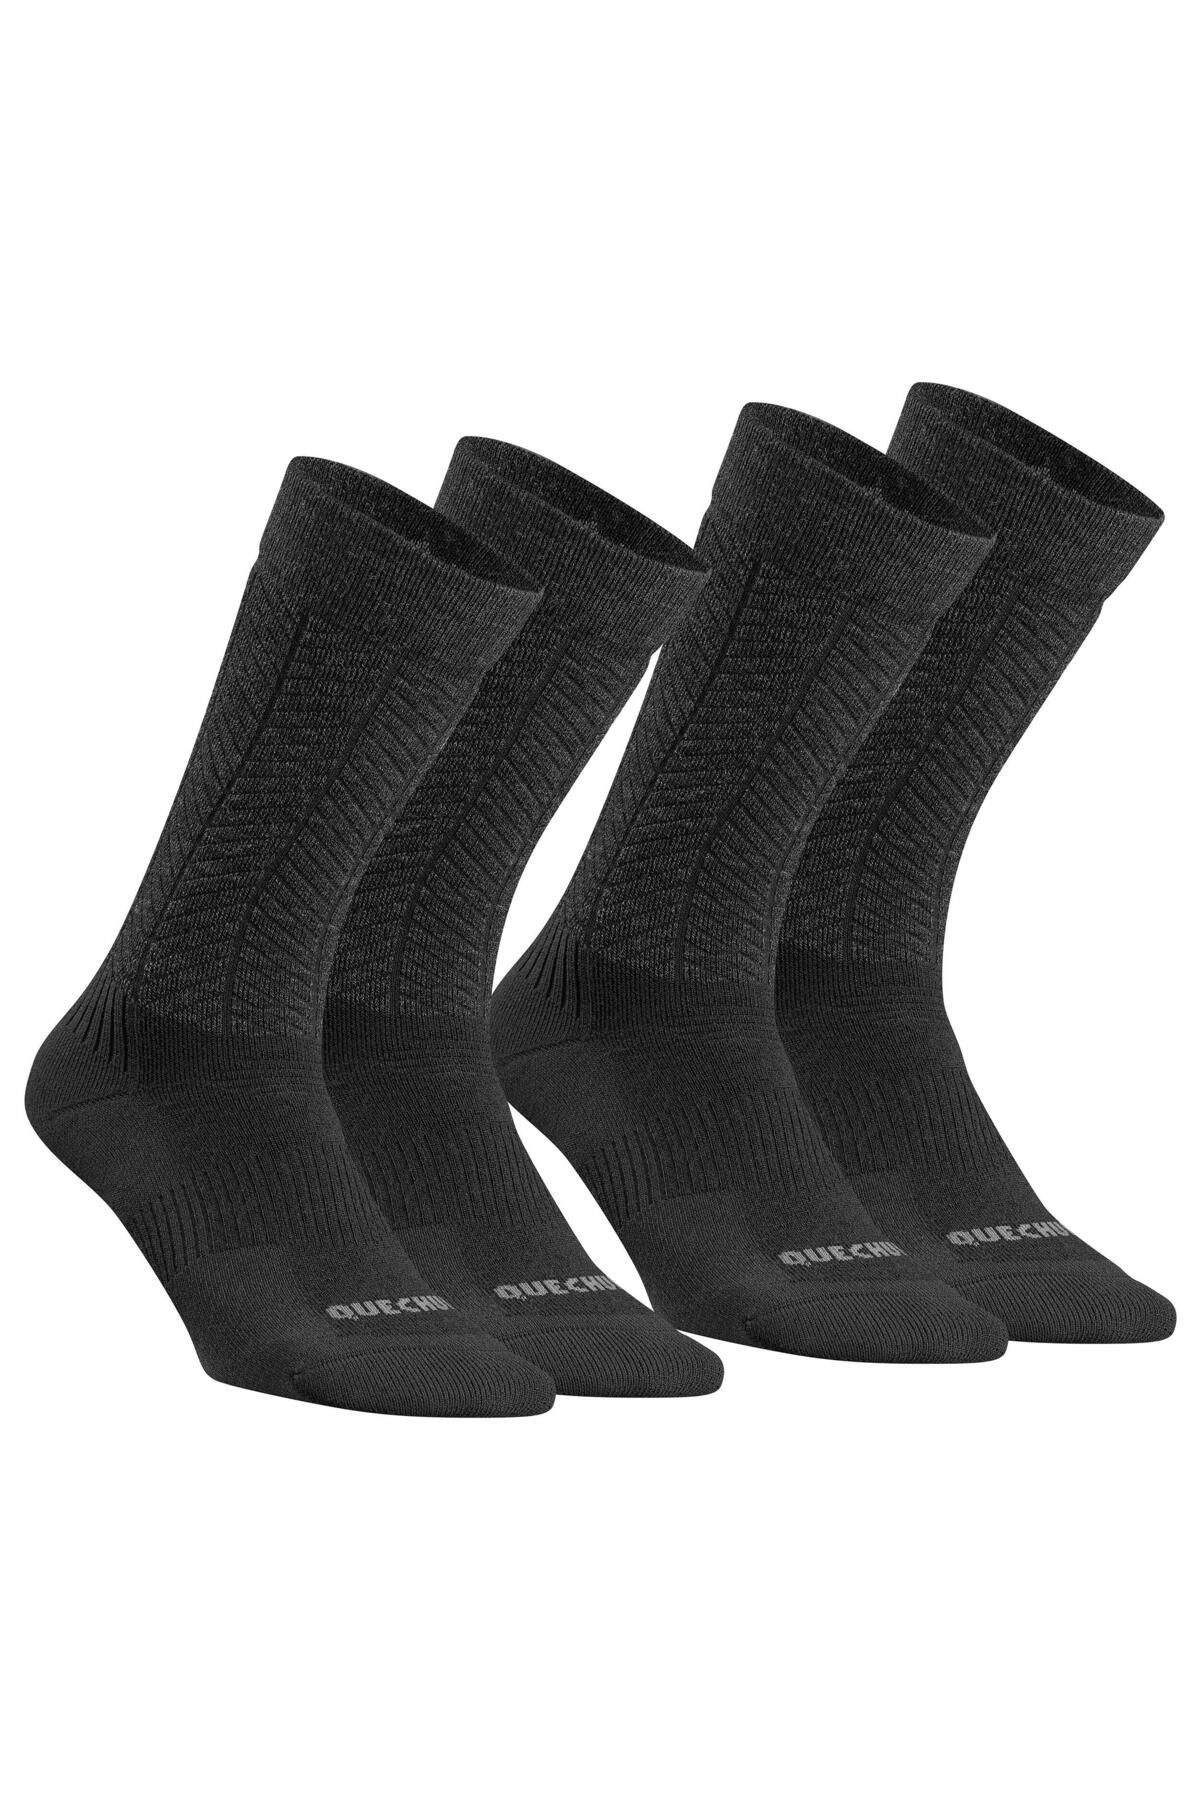 Decathlon QUECHUA Yetişkin Uzun / Termal Çorap - Çok Sıcak Tutan Merinos Yün Çorap - Siyah - 2 Çift - SH500